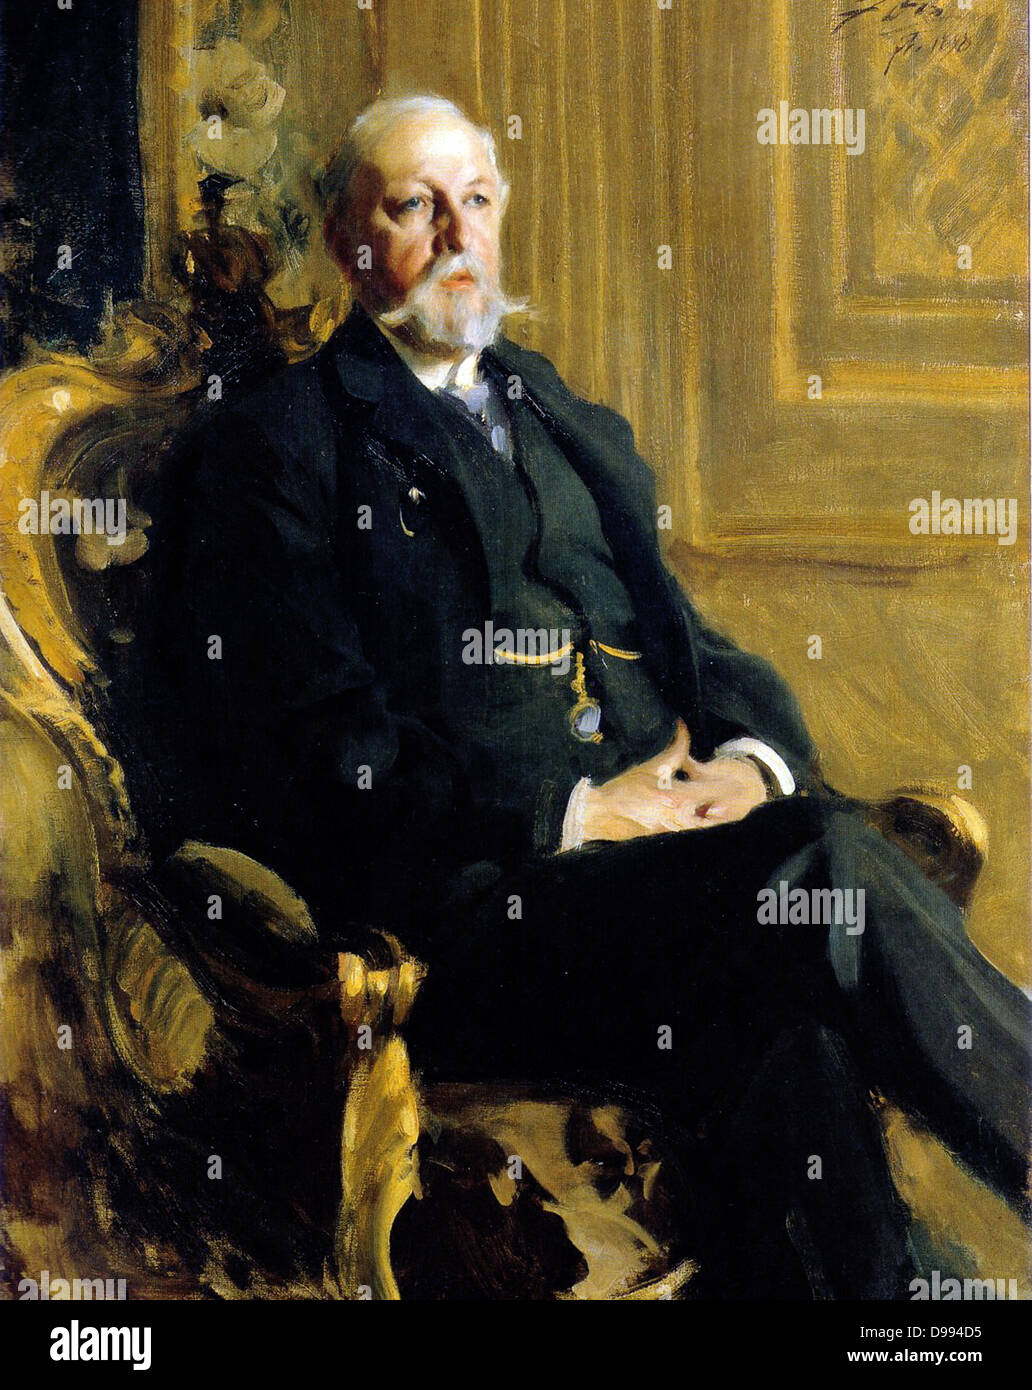 Oscar II (21 de enero de 1829 - 8 de diciembre de 1907), nacido Oscar Fredrik fue Rey de Noruega desde 1872 hasta 1905 y el Rey de Suecia desde 1872 a 1907 Foto de stock